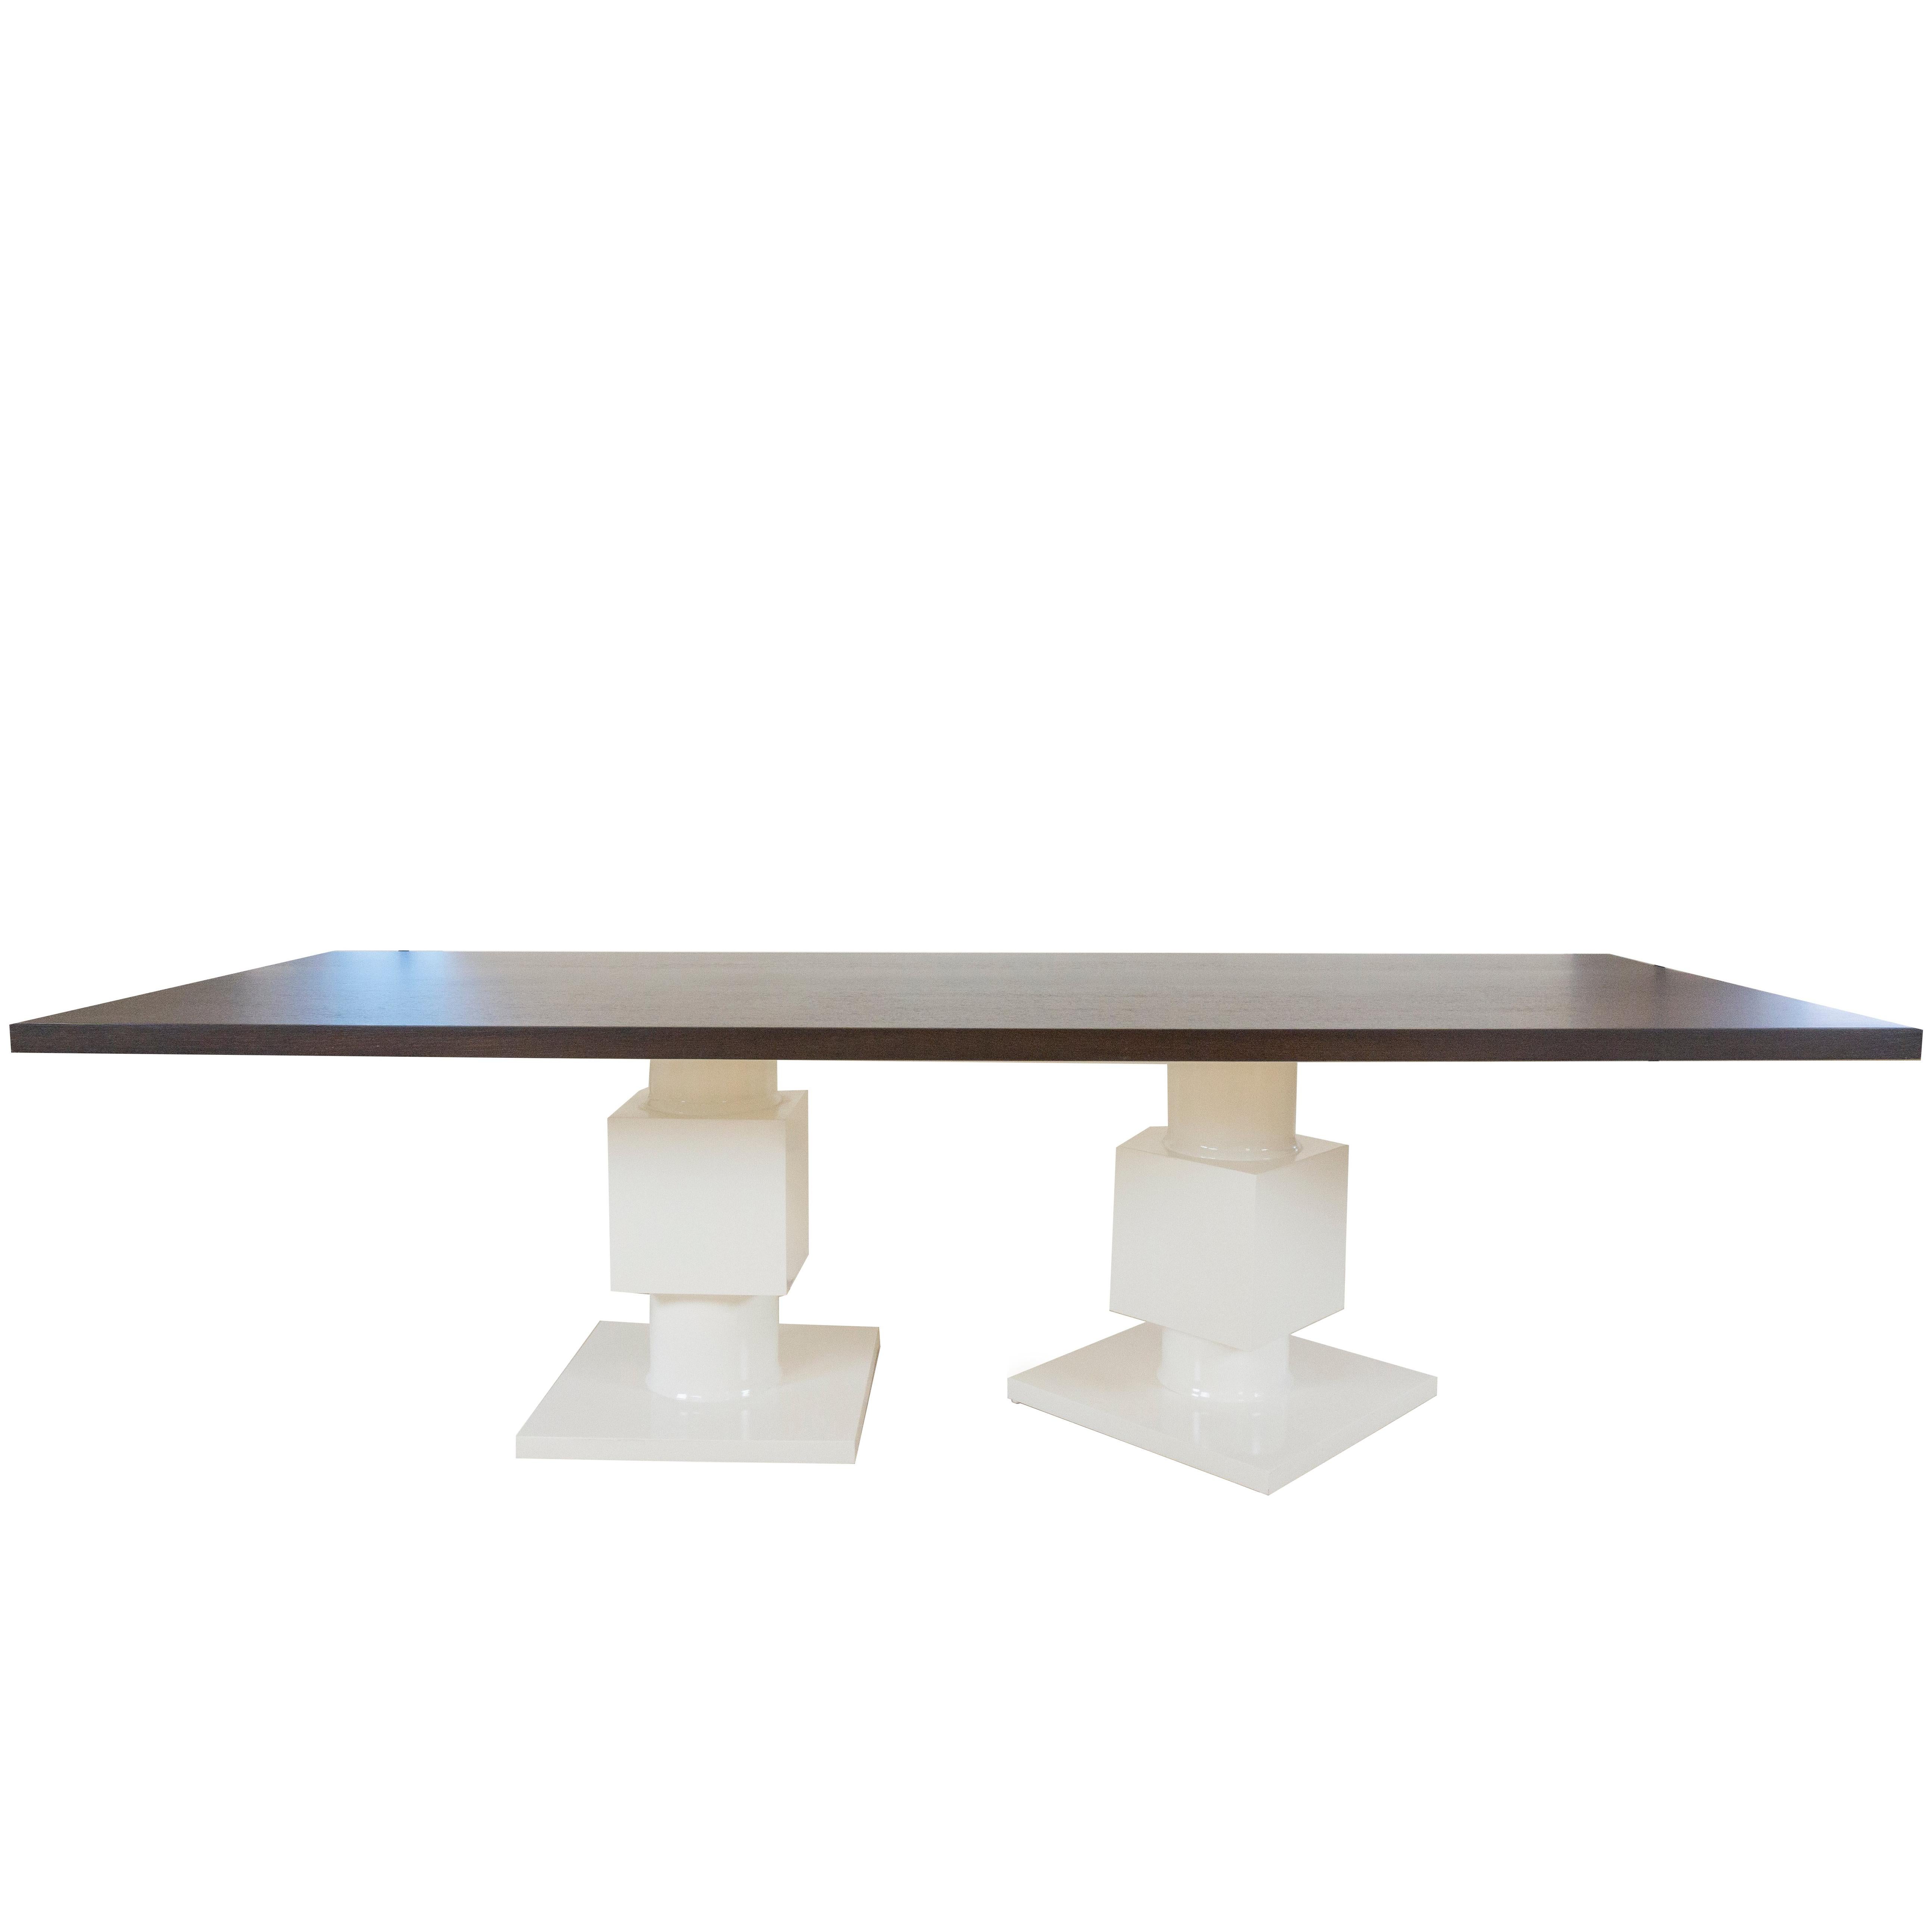 Dieser große moderne Esstisch ist eine skurrile Variante unseres beliebten Gabietta-Tisches. Die Platte aus geöltem Wengeholz ist optisch auffällig und langlebig, der Sockel hat asymmetrische, weiß lackierte Beine. 

Abmessungen:

108